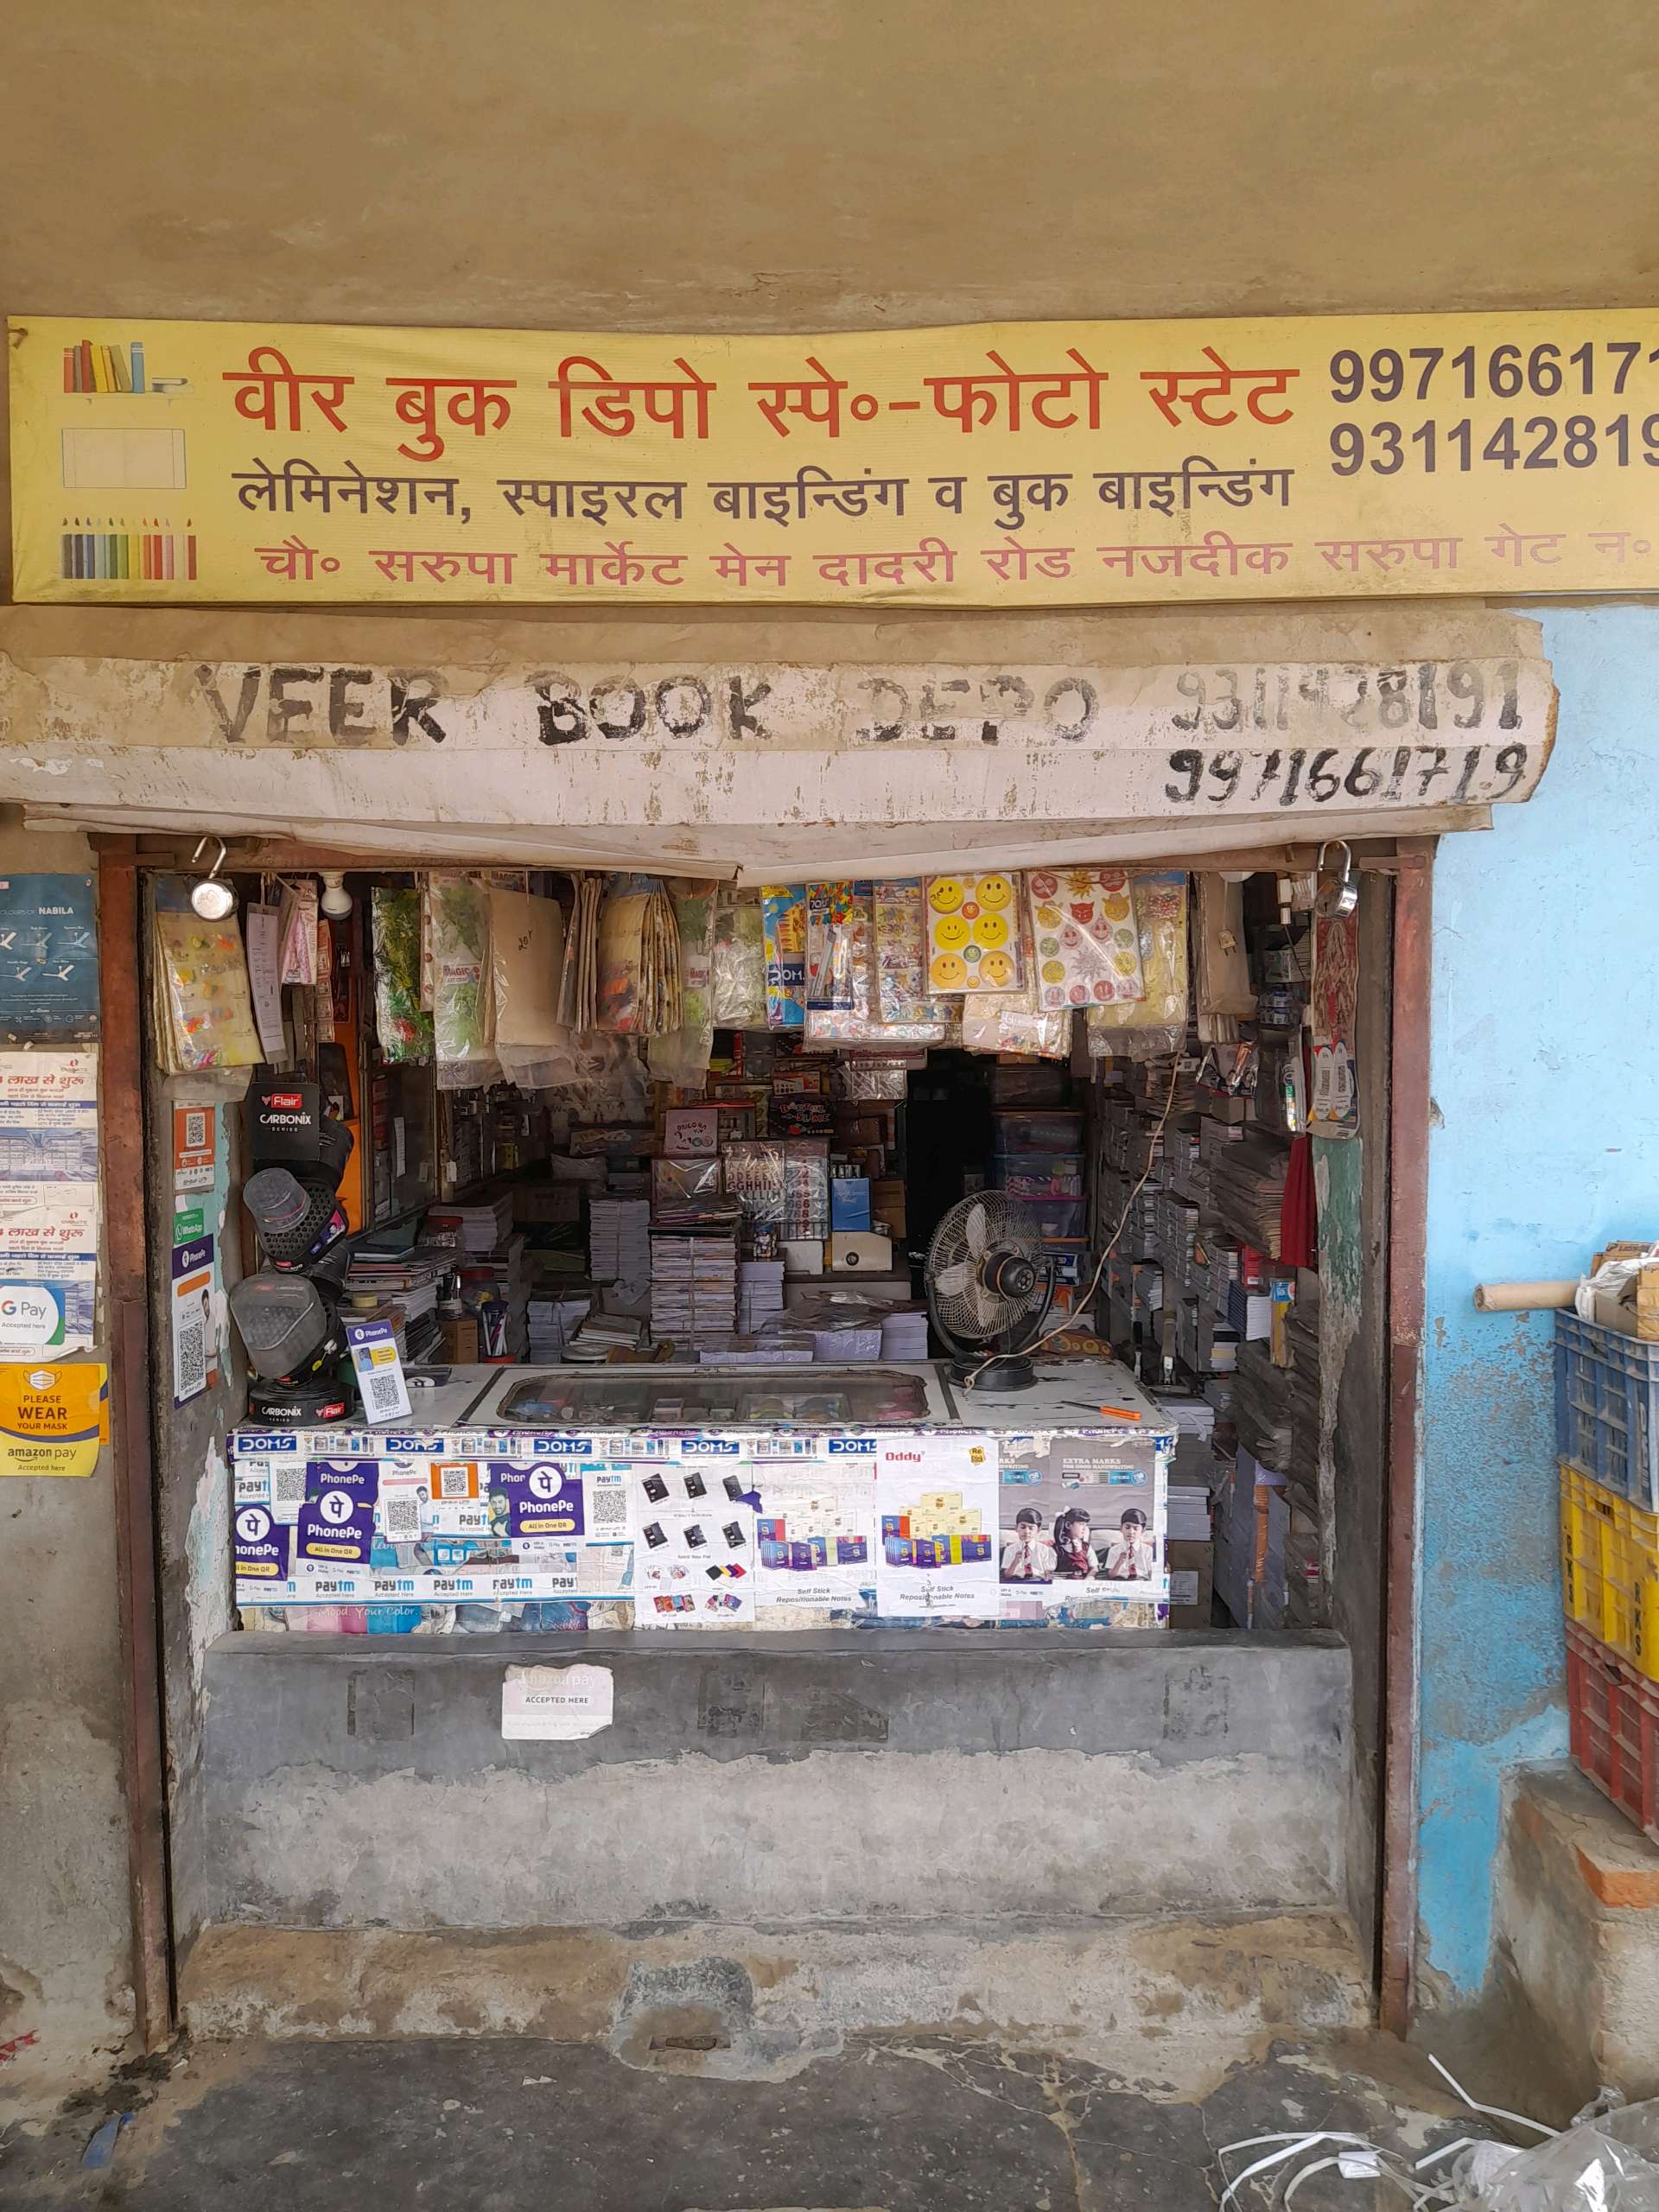 Veer Book Depot